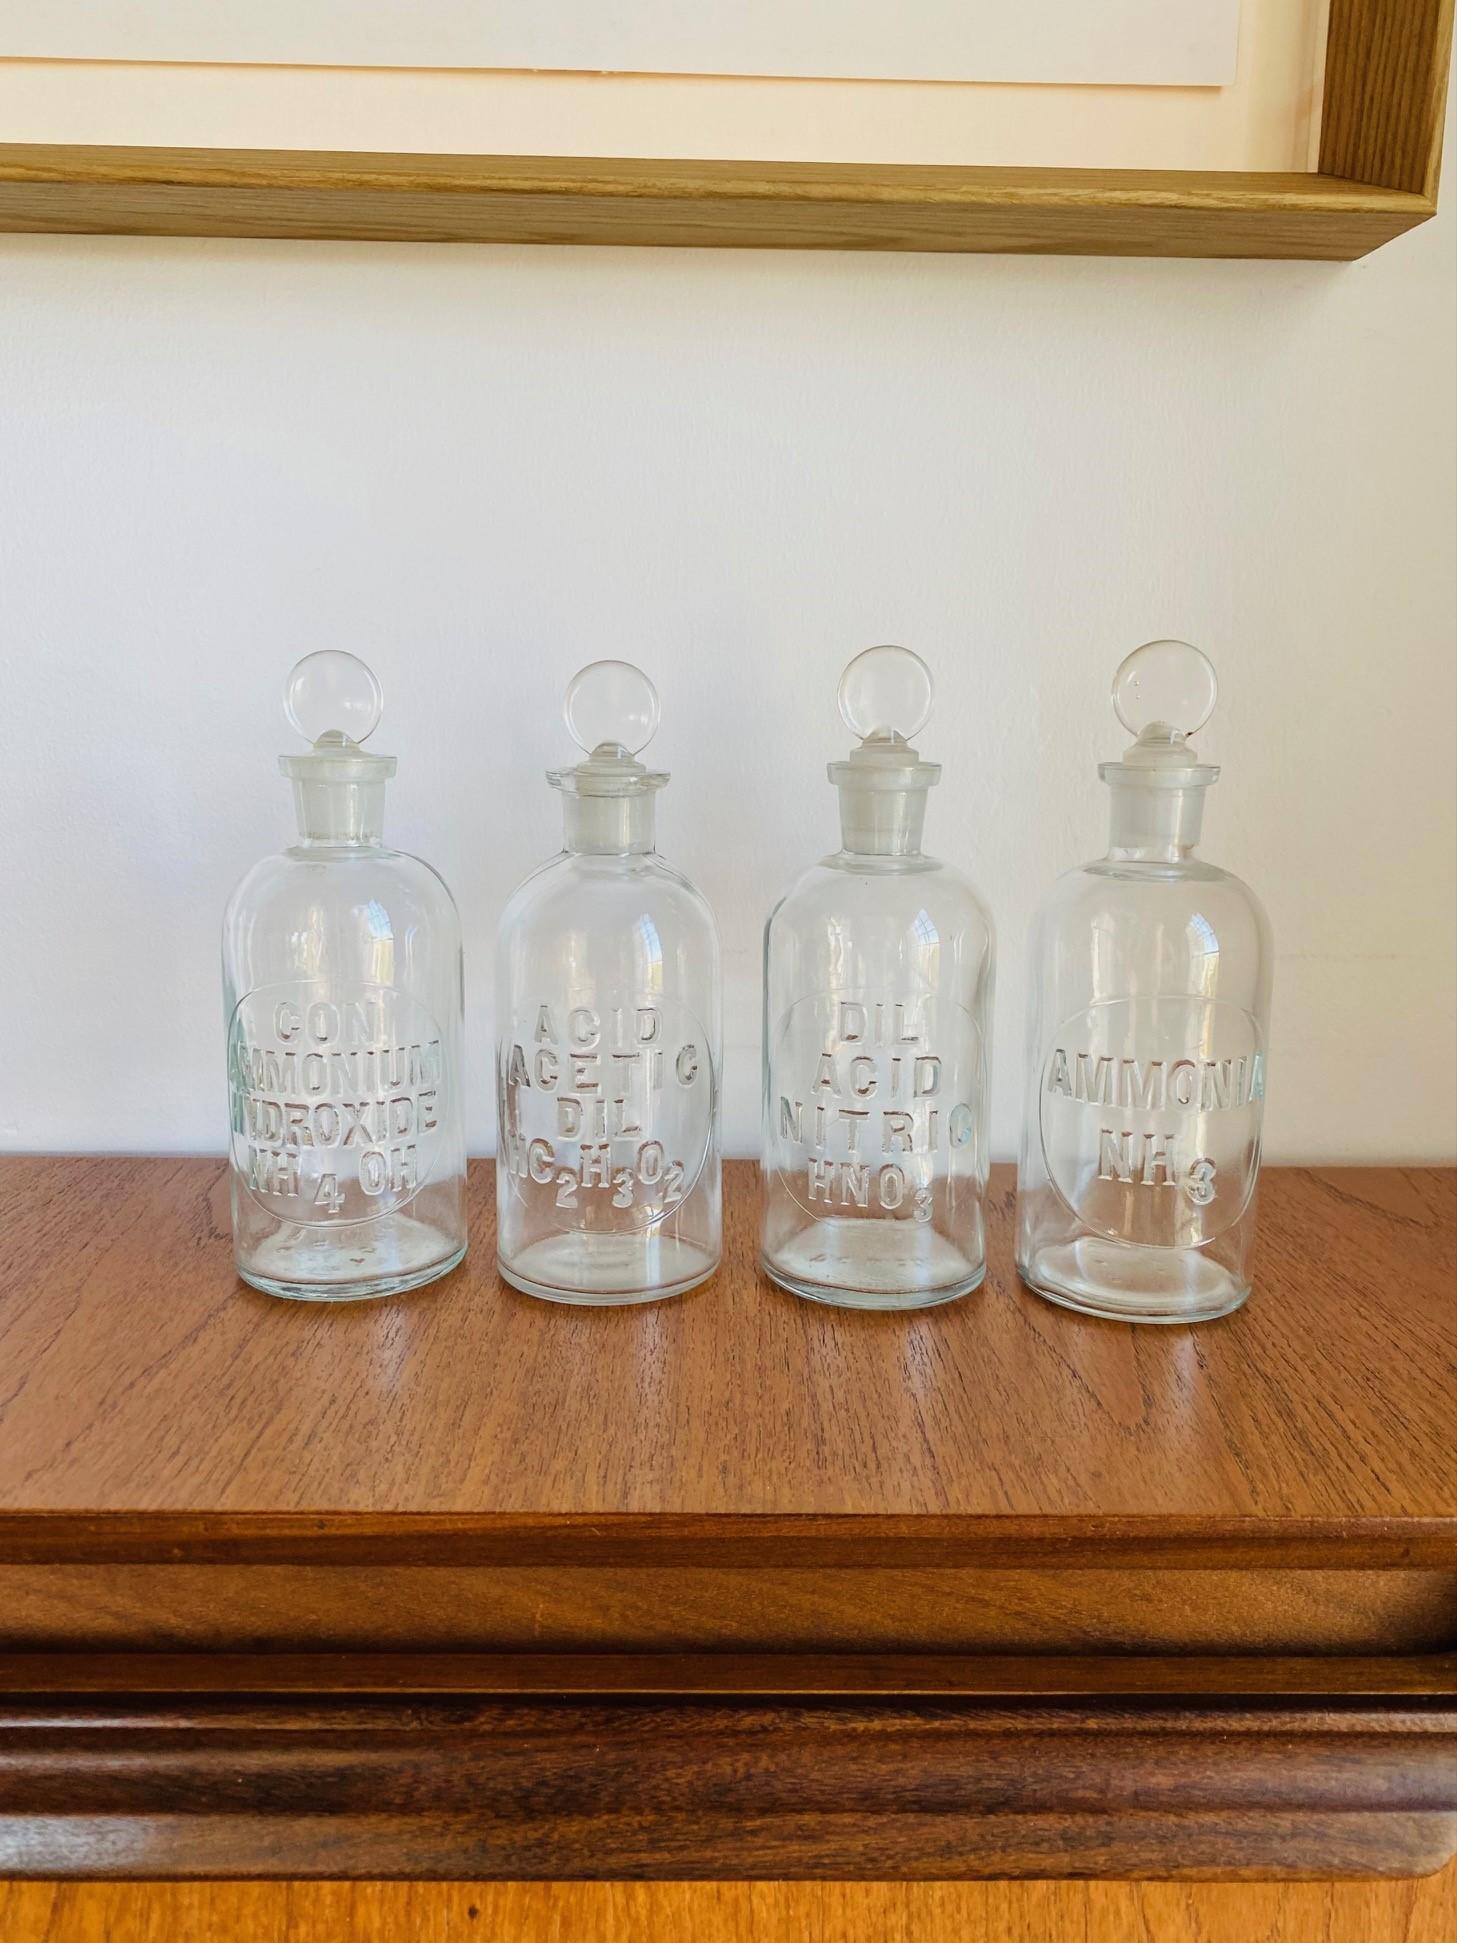 Vintage set de 4 bouteilles d'apothicaire vintage avec bouchons et embossé.  Classiques et uniques, ces magnifiques bouteilles scintillent dans le verre vintage avec beauté et form A.  La forme classique de la bouteille et du bouchon ajoute une